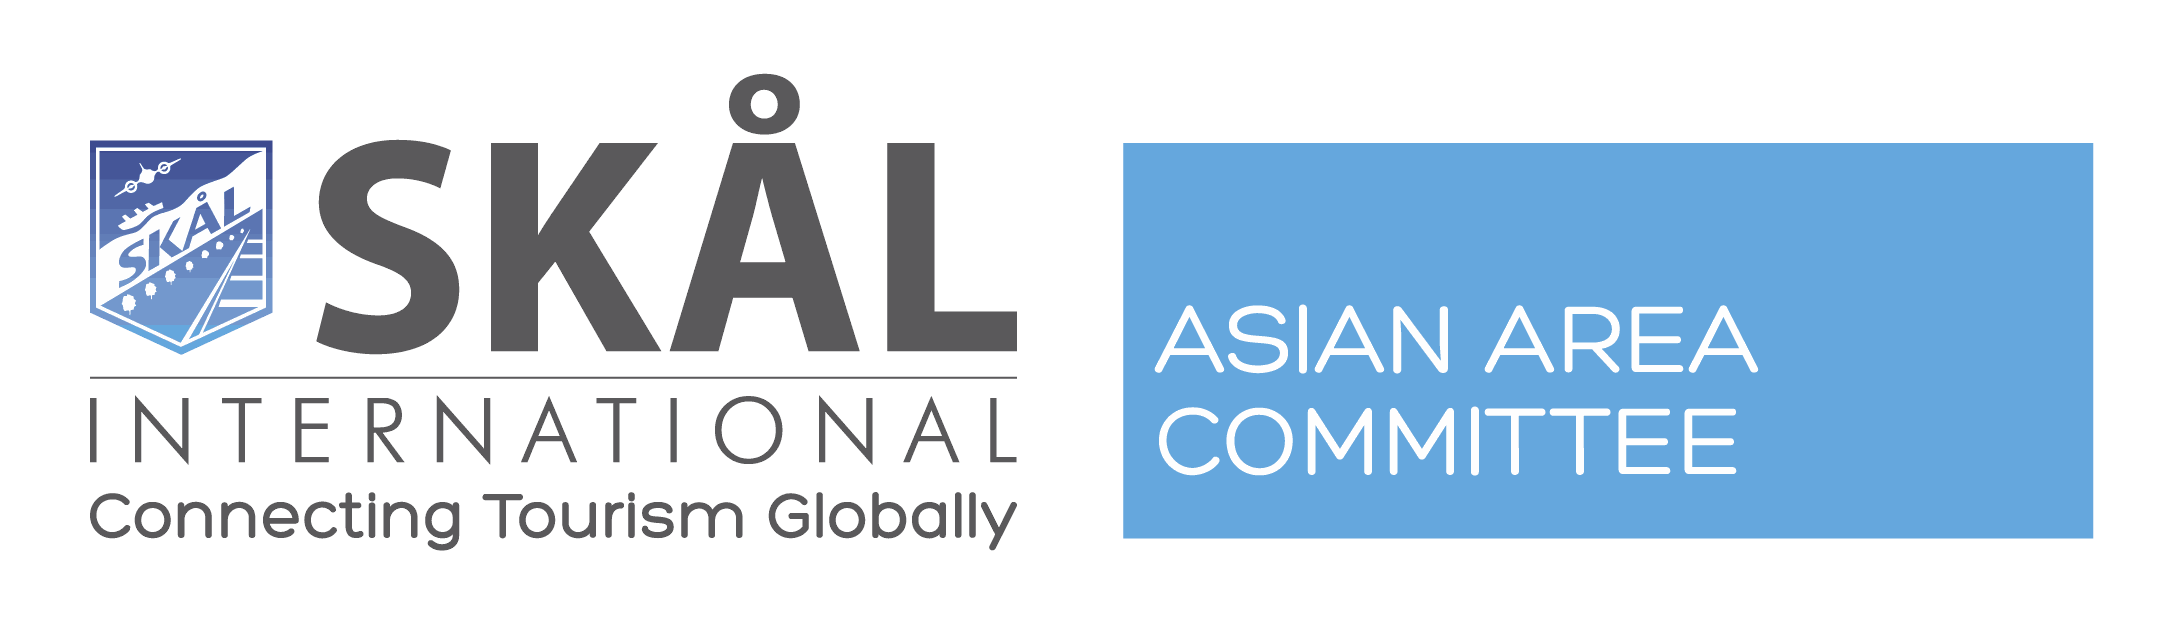 Skål International Asian Area